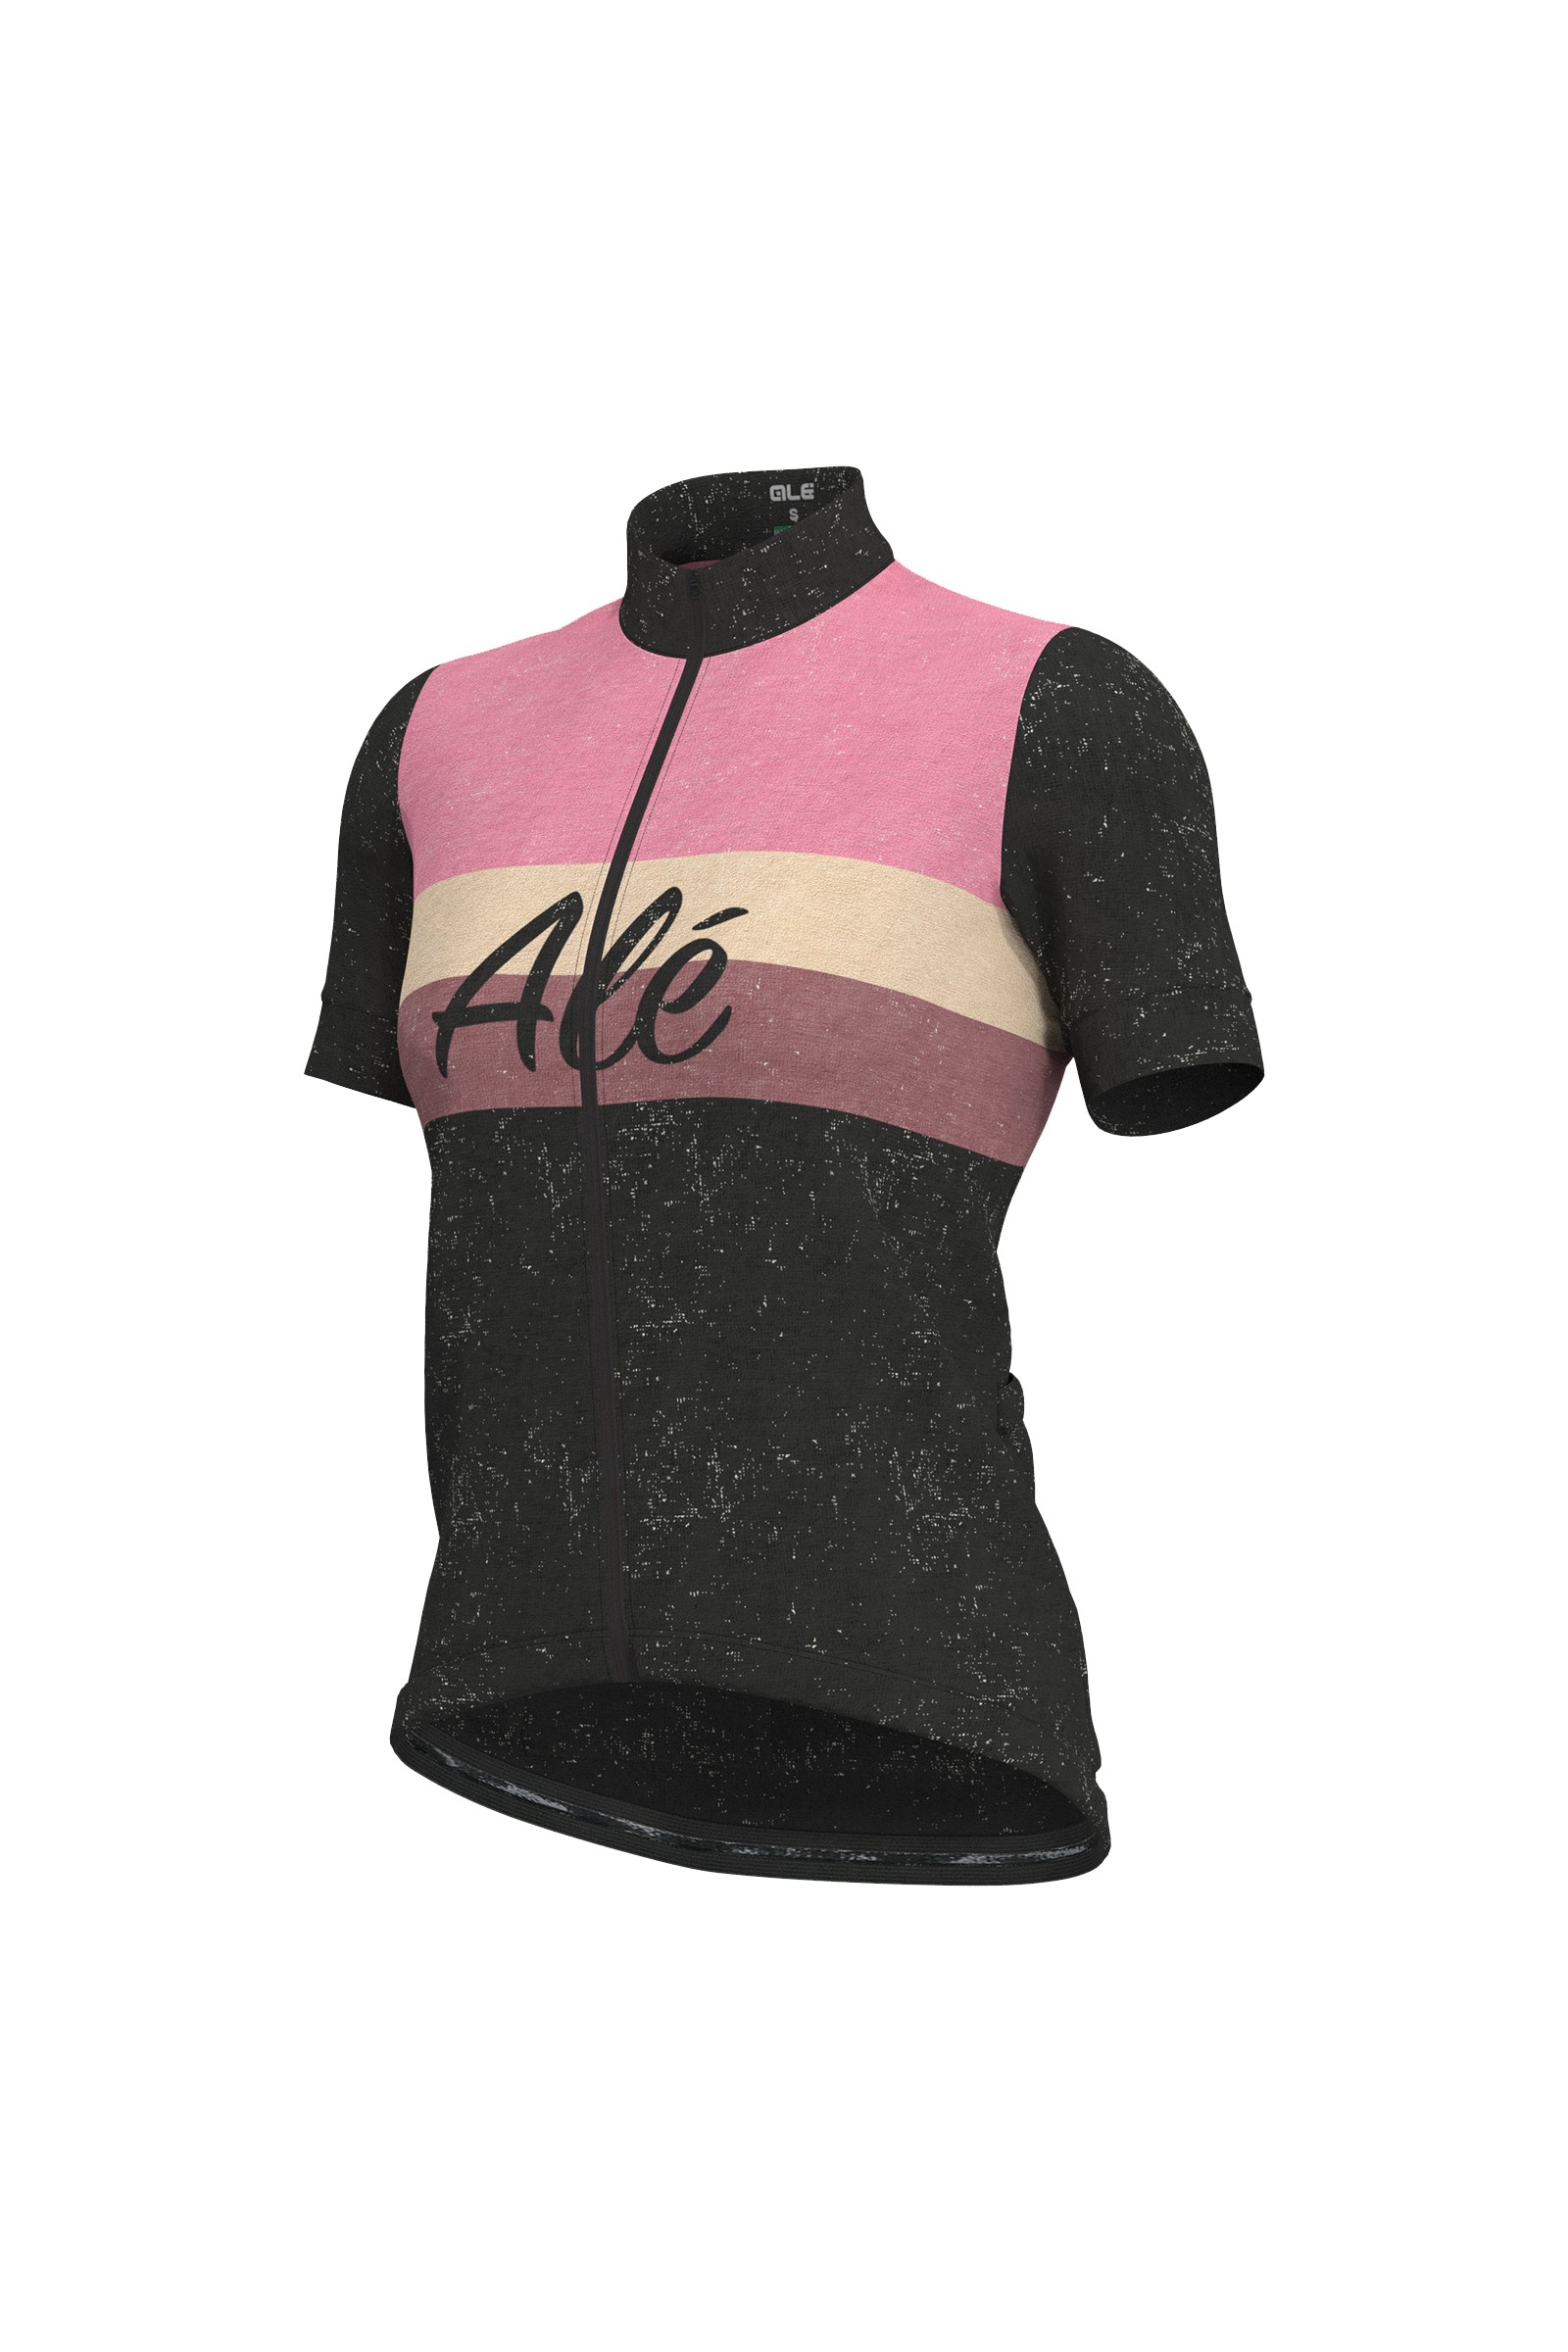 Koszulka rowerowa damska Al Cycling Classic Storica